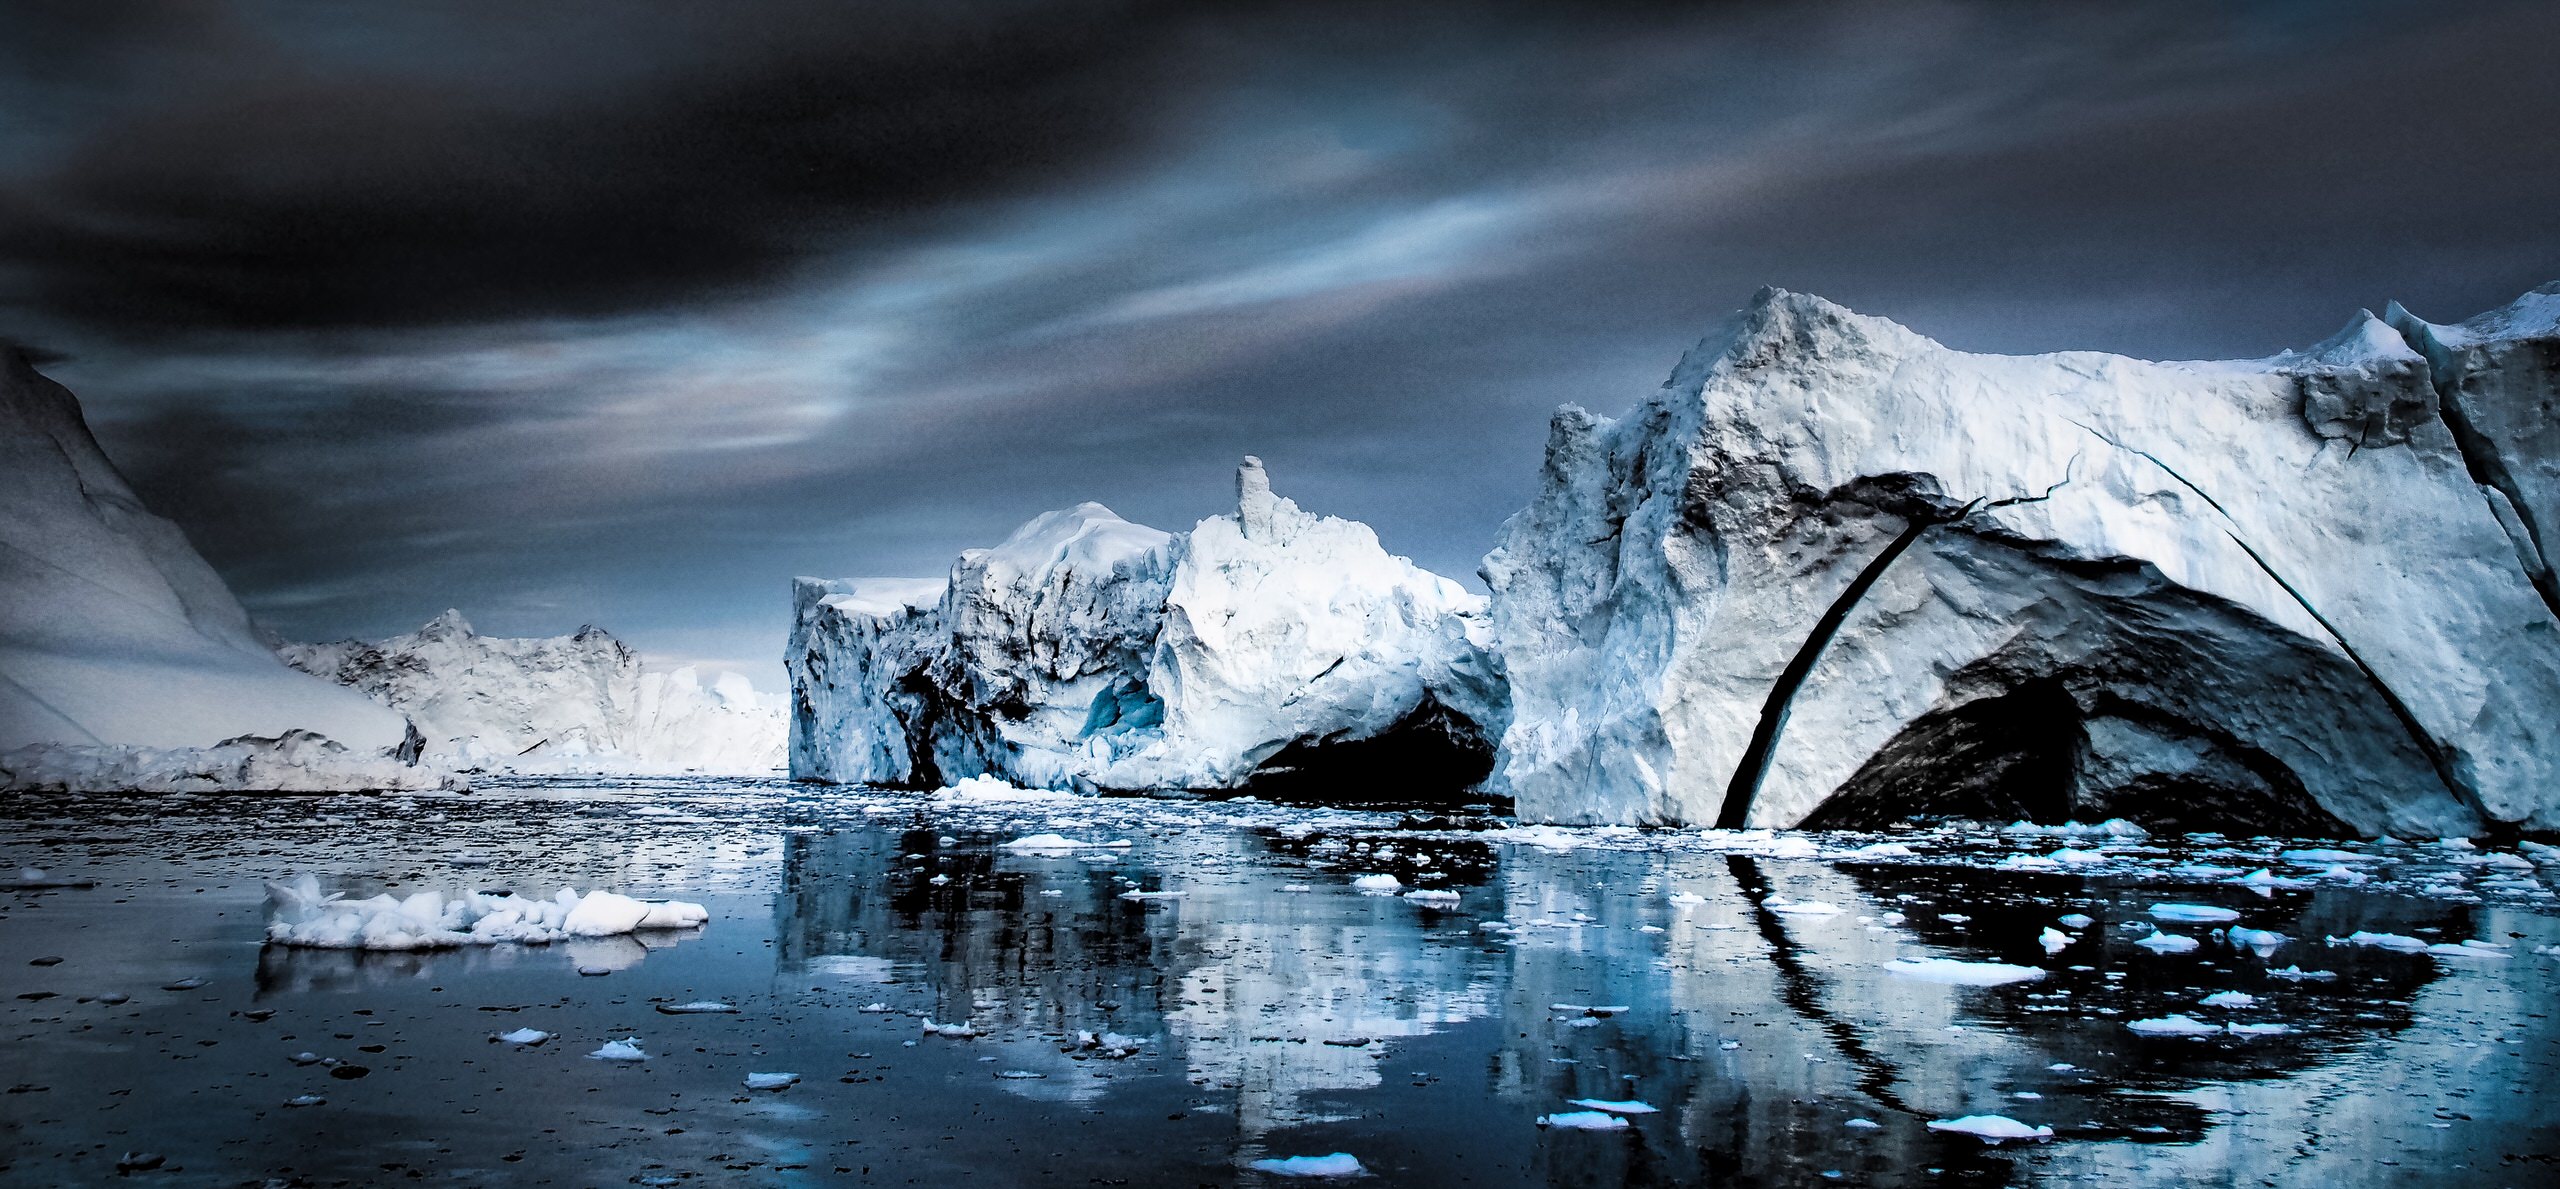 Bắc Cực sắp trở thành một nhân tố gây biến đổi khi hậu mới